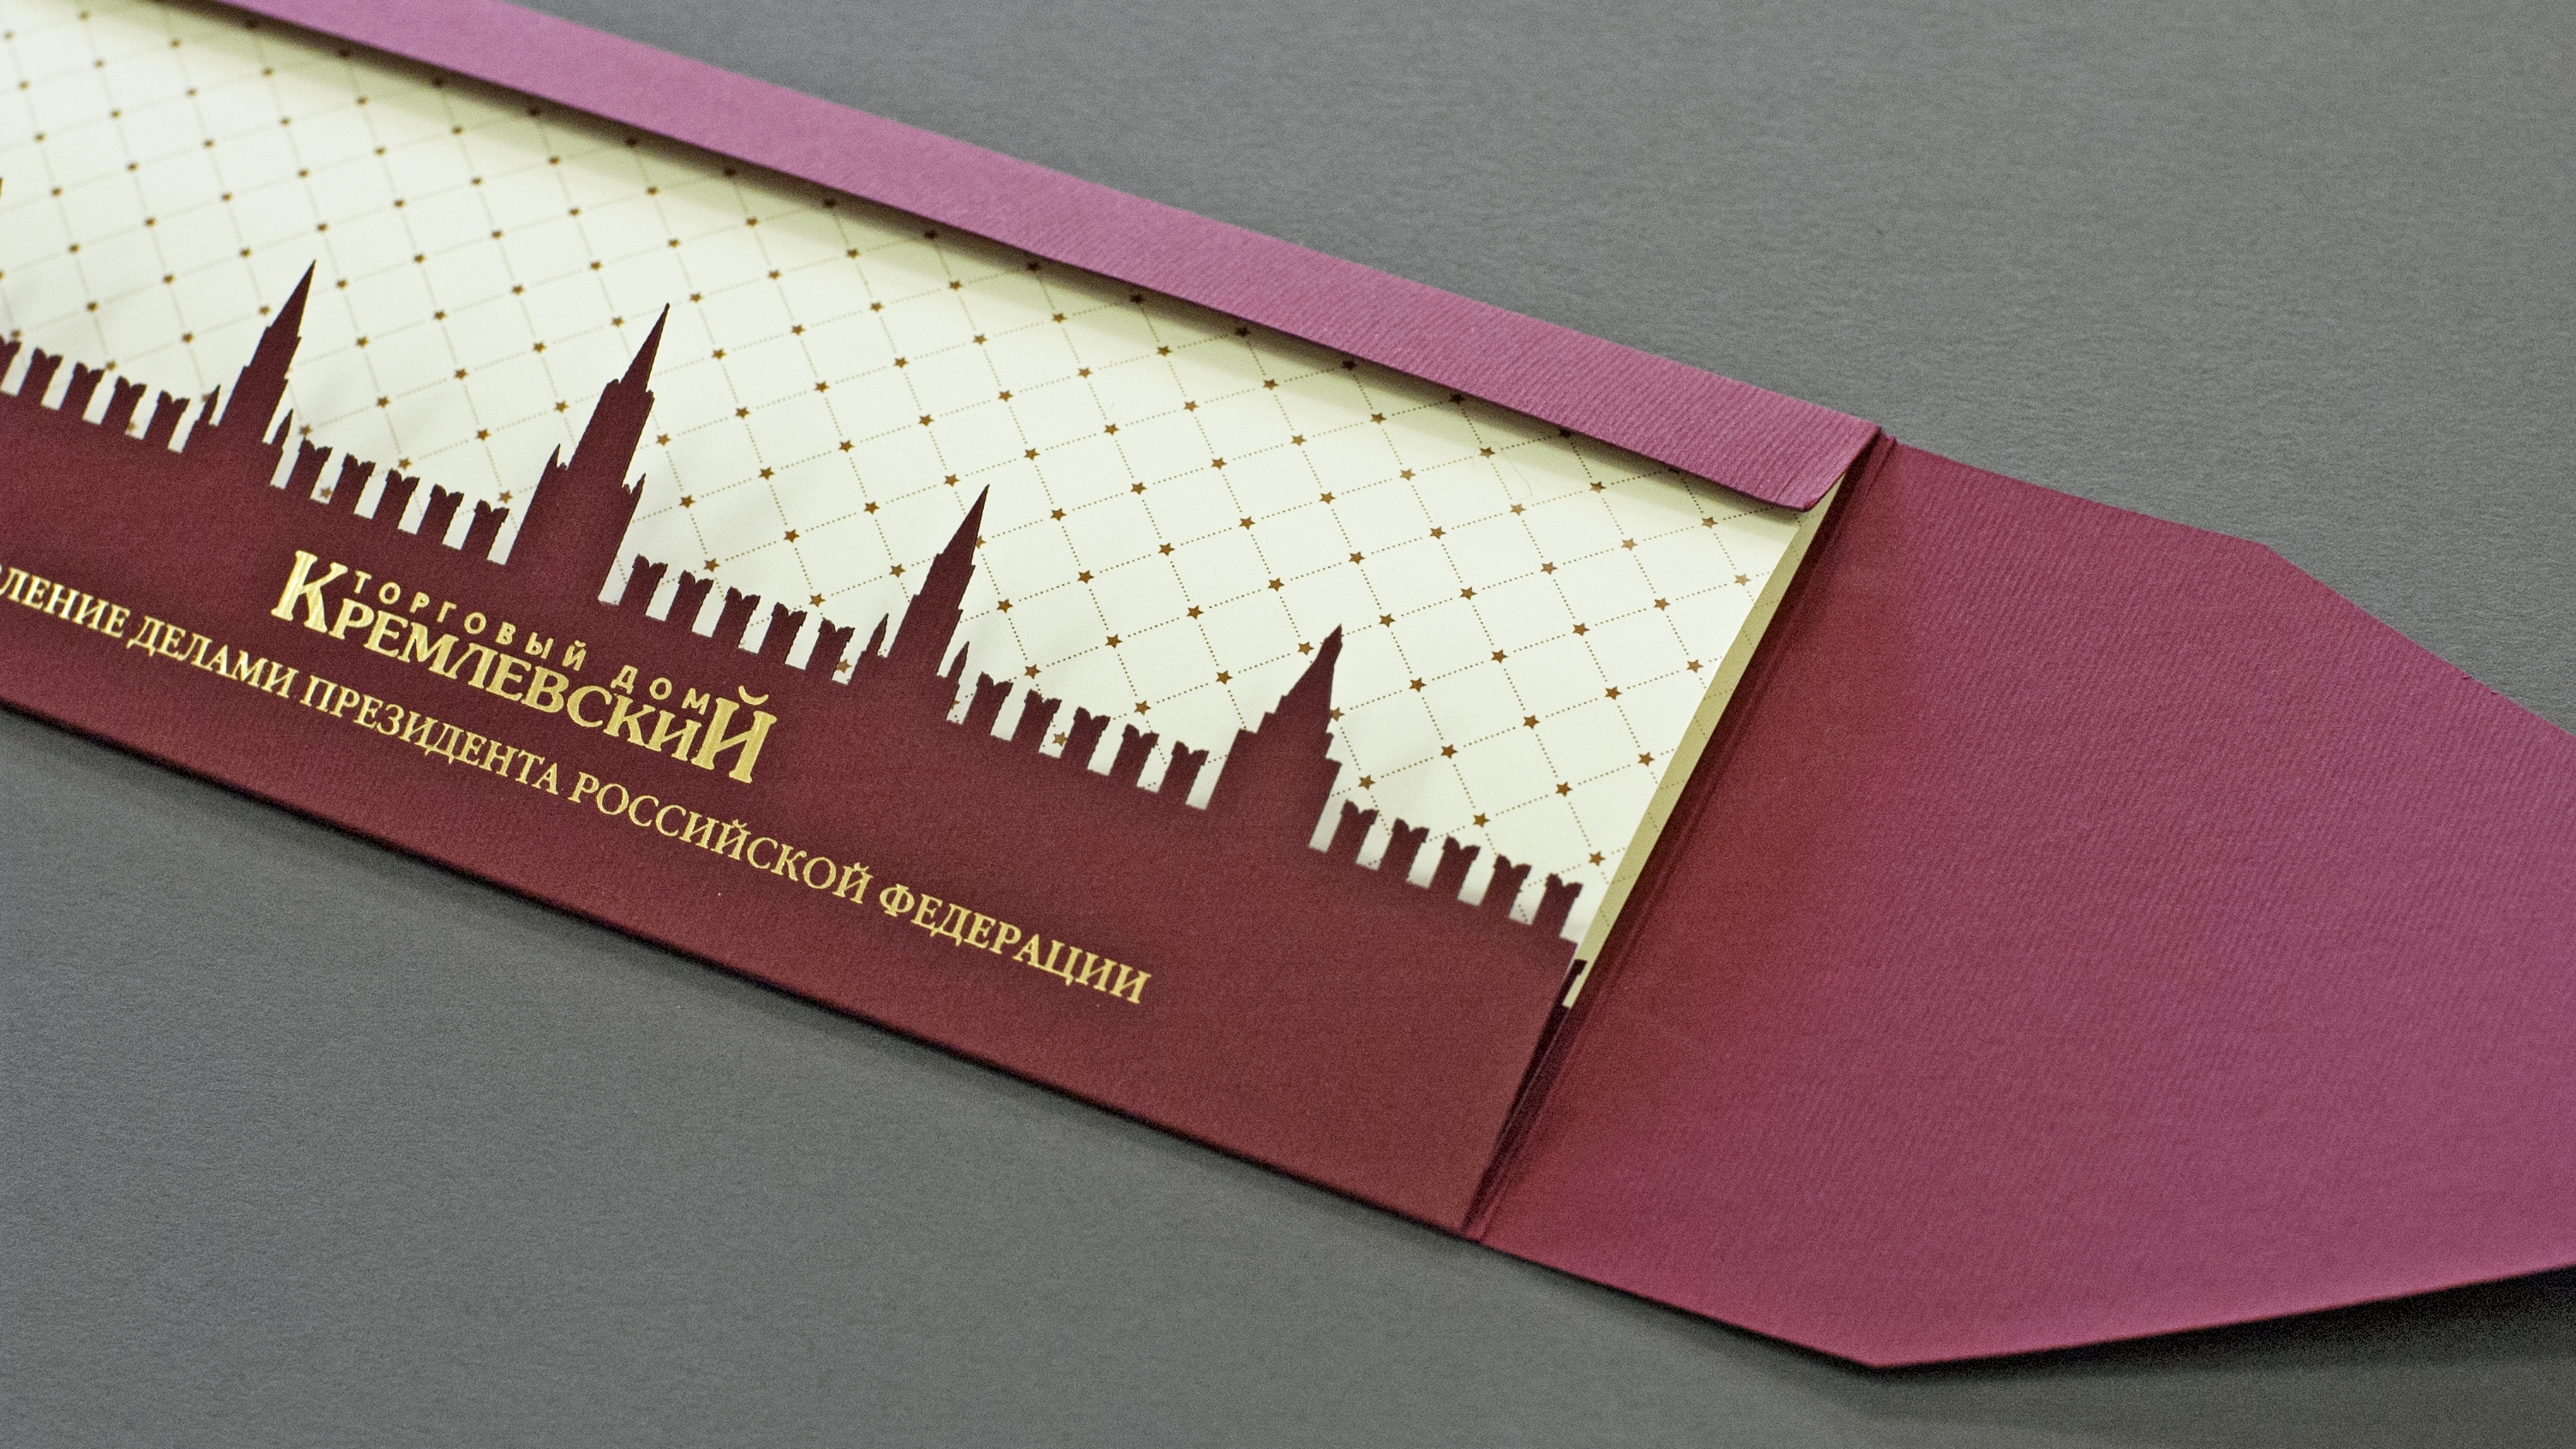 ТД «Кремлевский» - Универсальная открытка